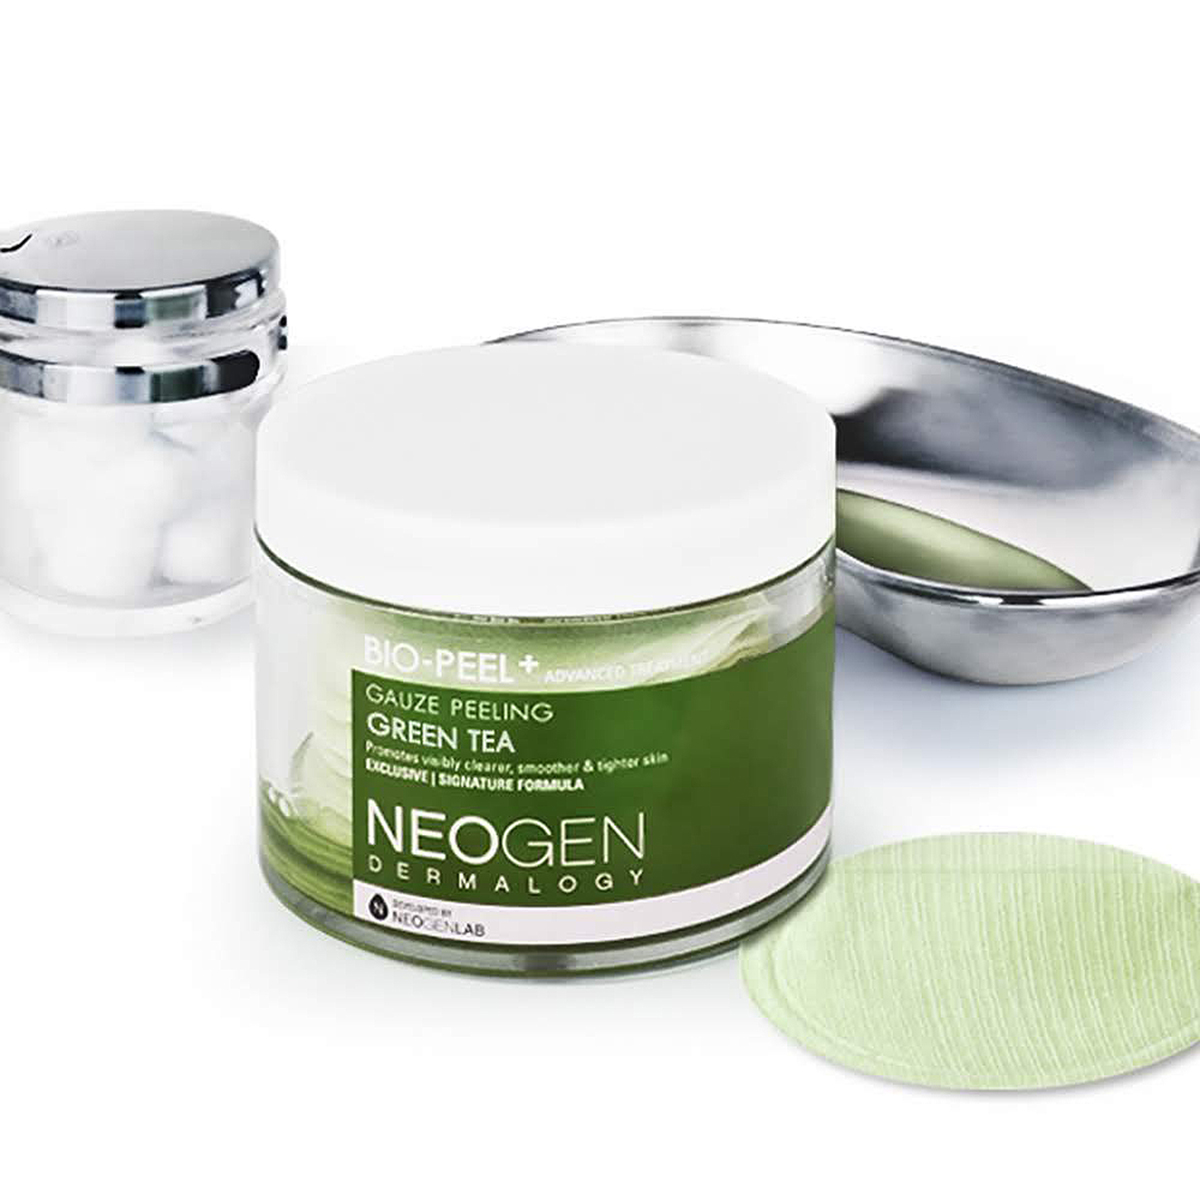 neogen-bio-peel-green-tea